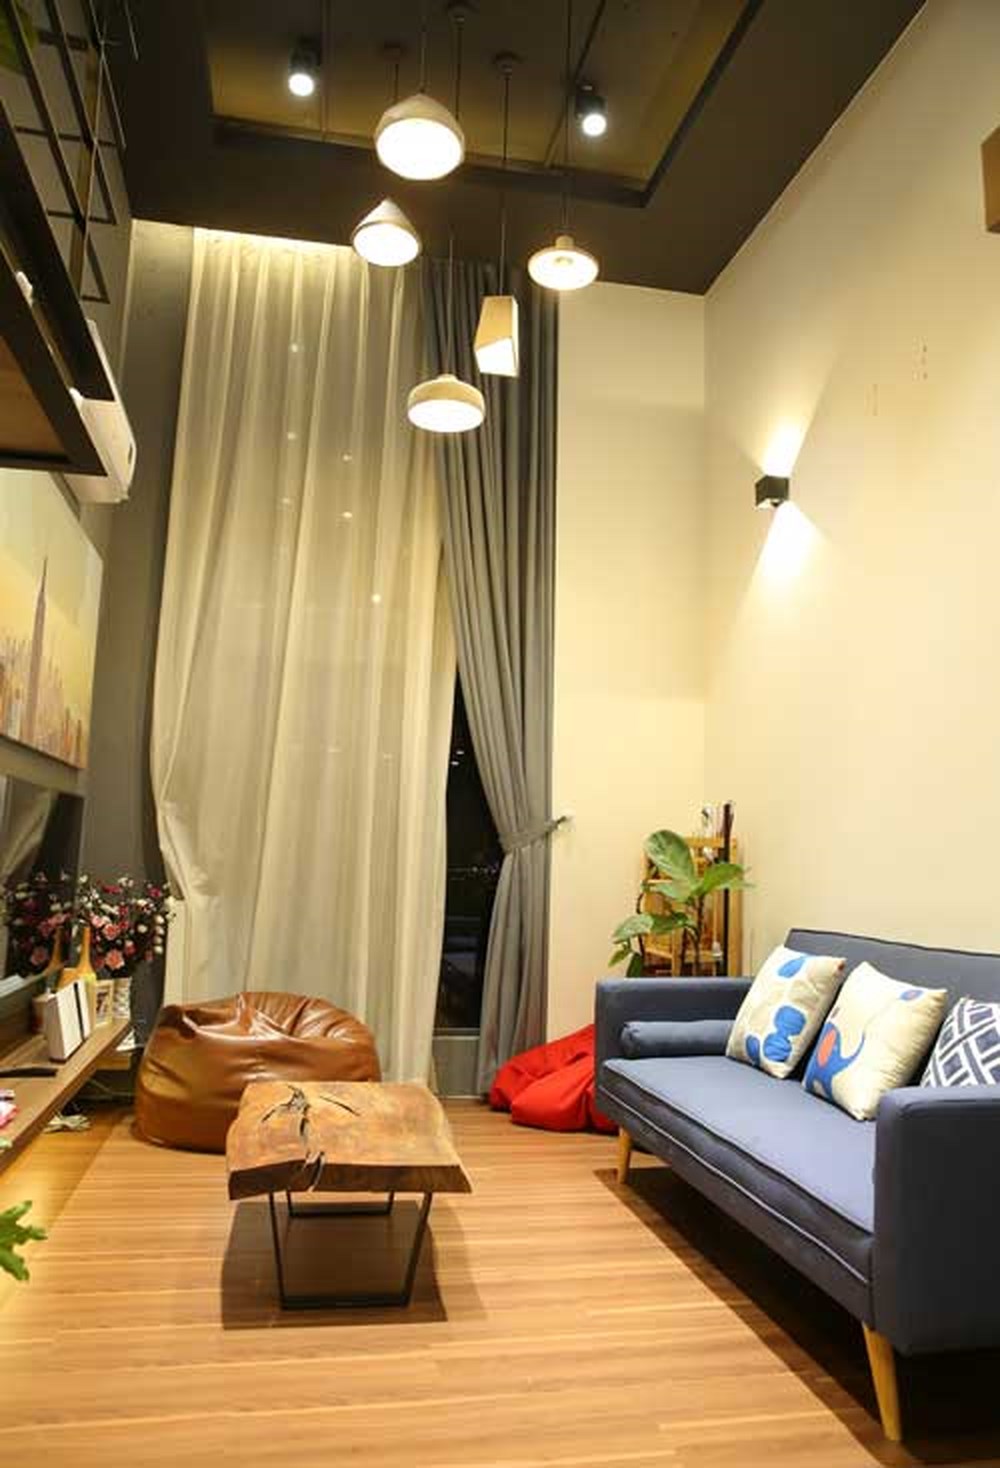 Hệ thống chiếu sáng thả trần tạo điểm nhấn sang trọng và hiện đại cho phòng khách.